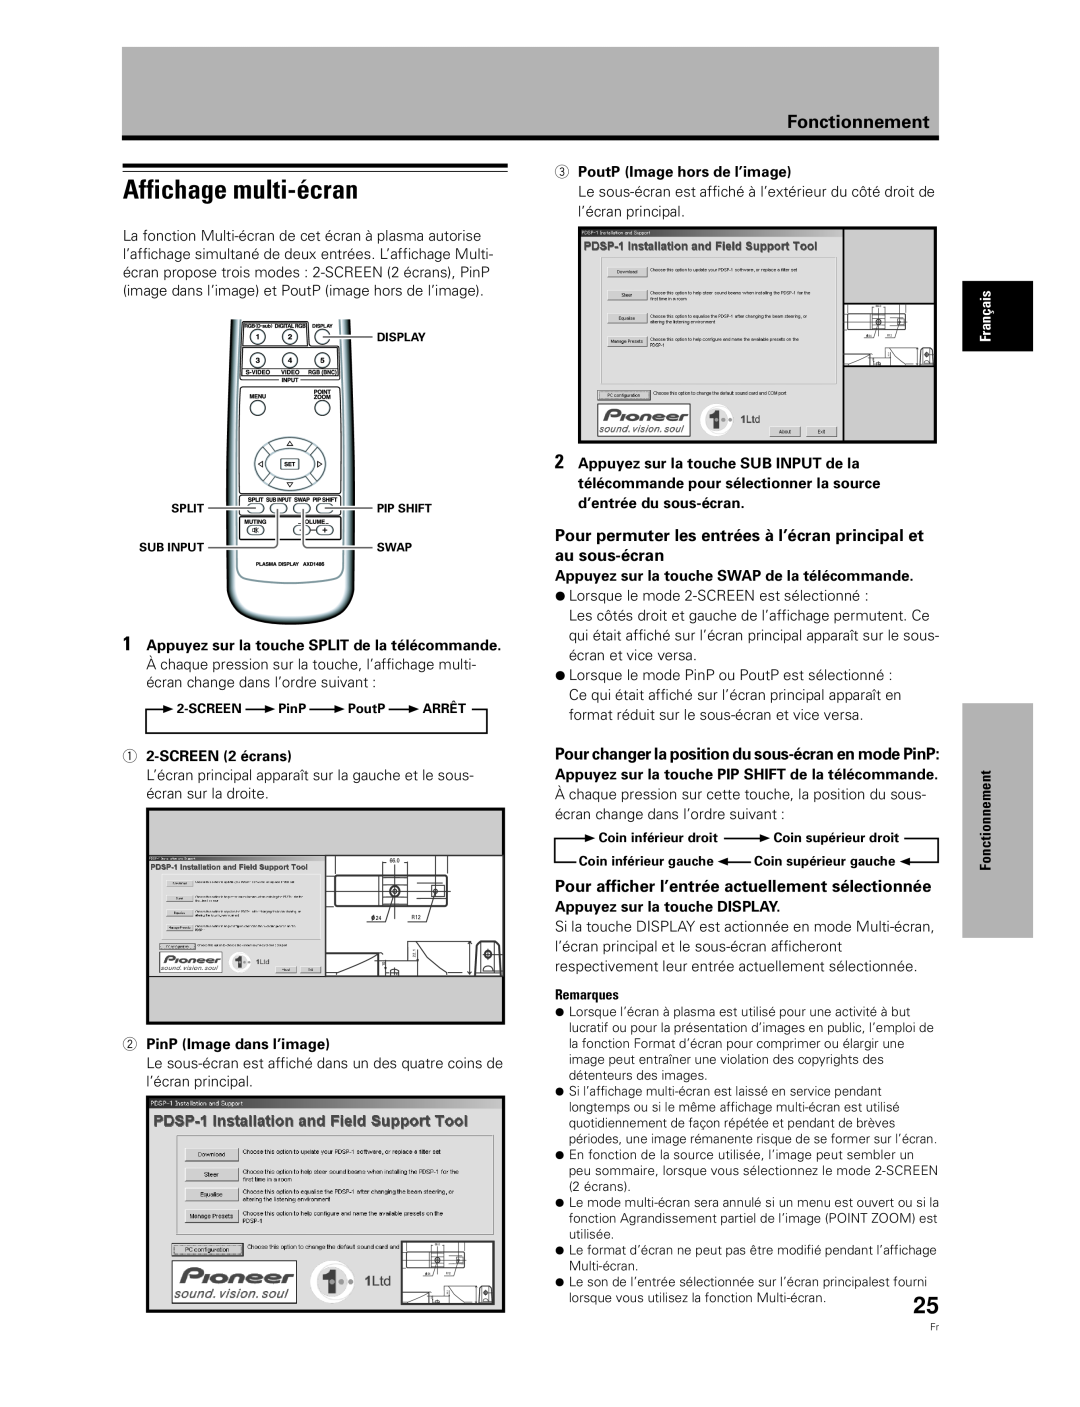 Pioneer PDA-5003 Affichage multi-écran, Pour permuter les entrées à l’écran principal et au sous-écran, Fonctionnement 